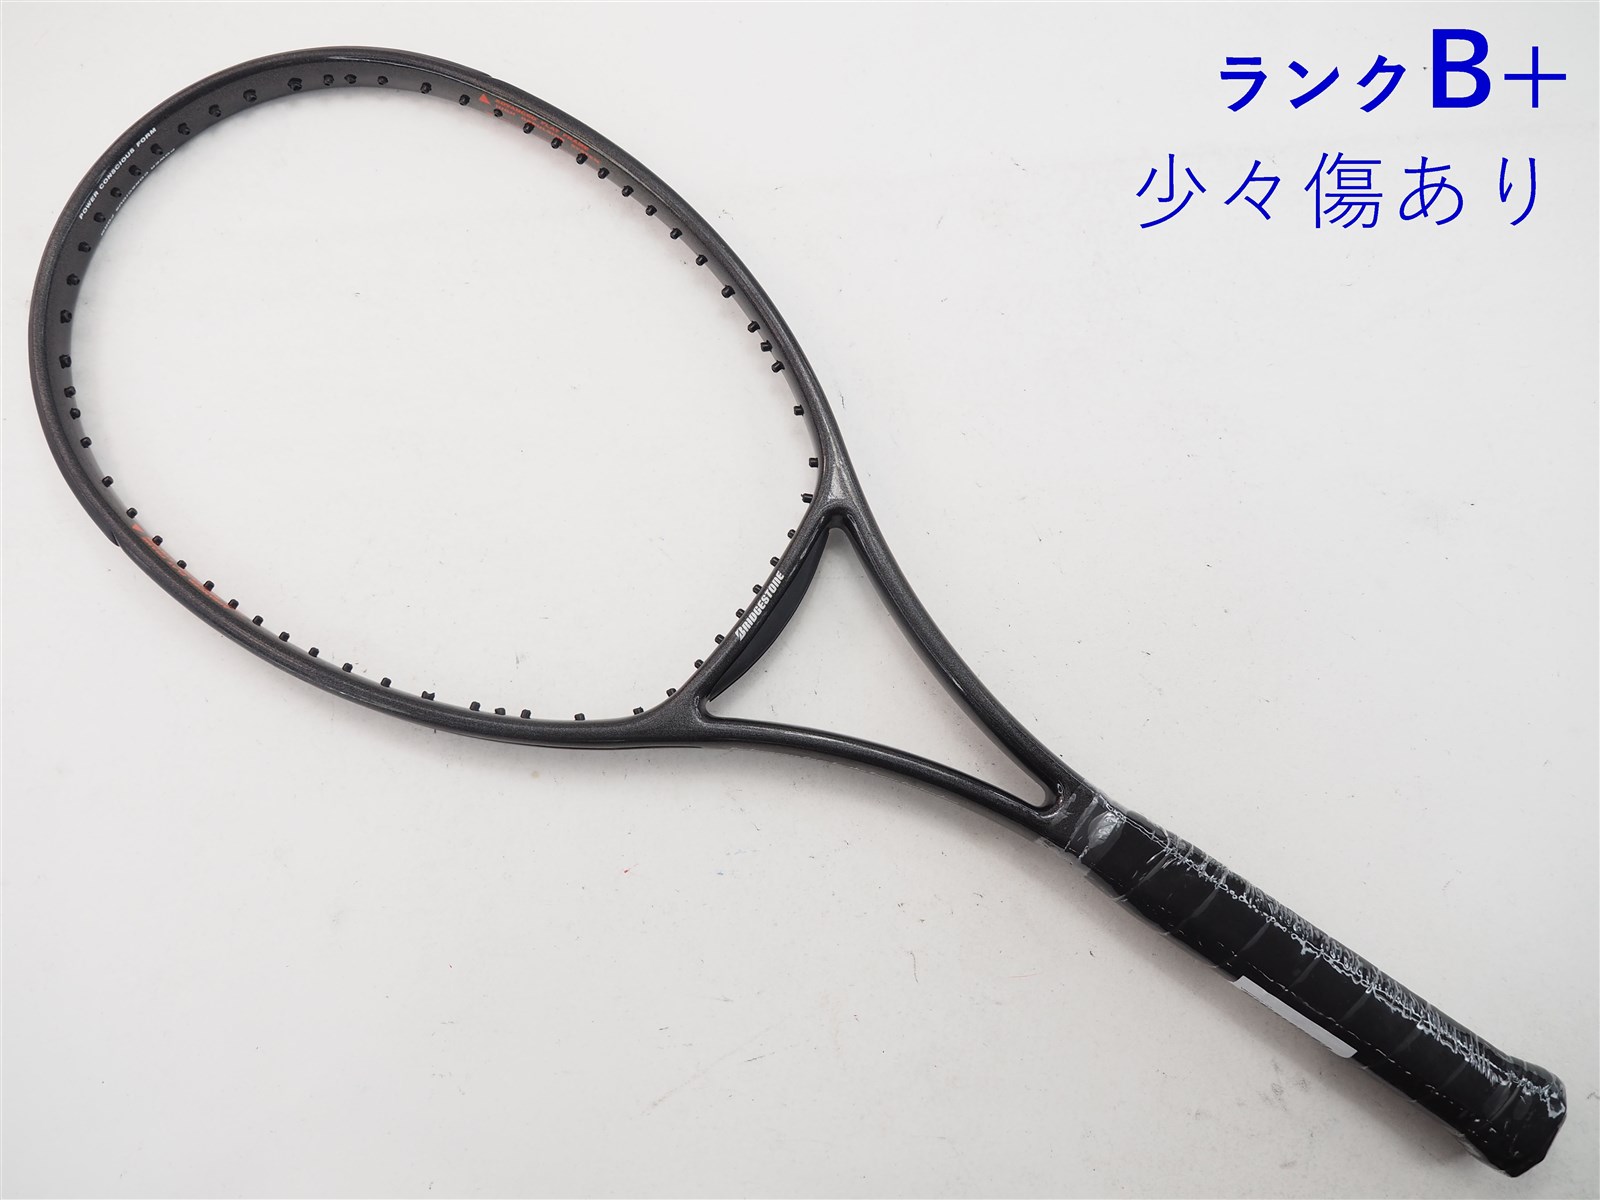 【中古】ブリヂストン ビンセントBRIDGESTONE VINCENT(G3相当)【中古 テニスラケット】